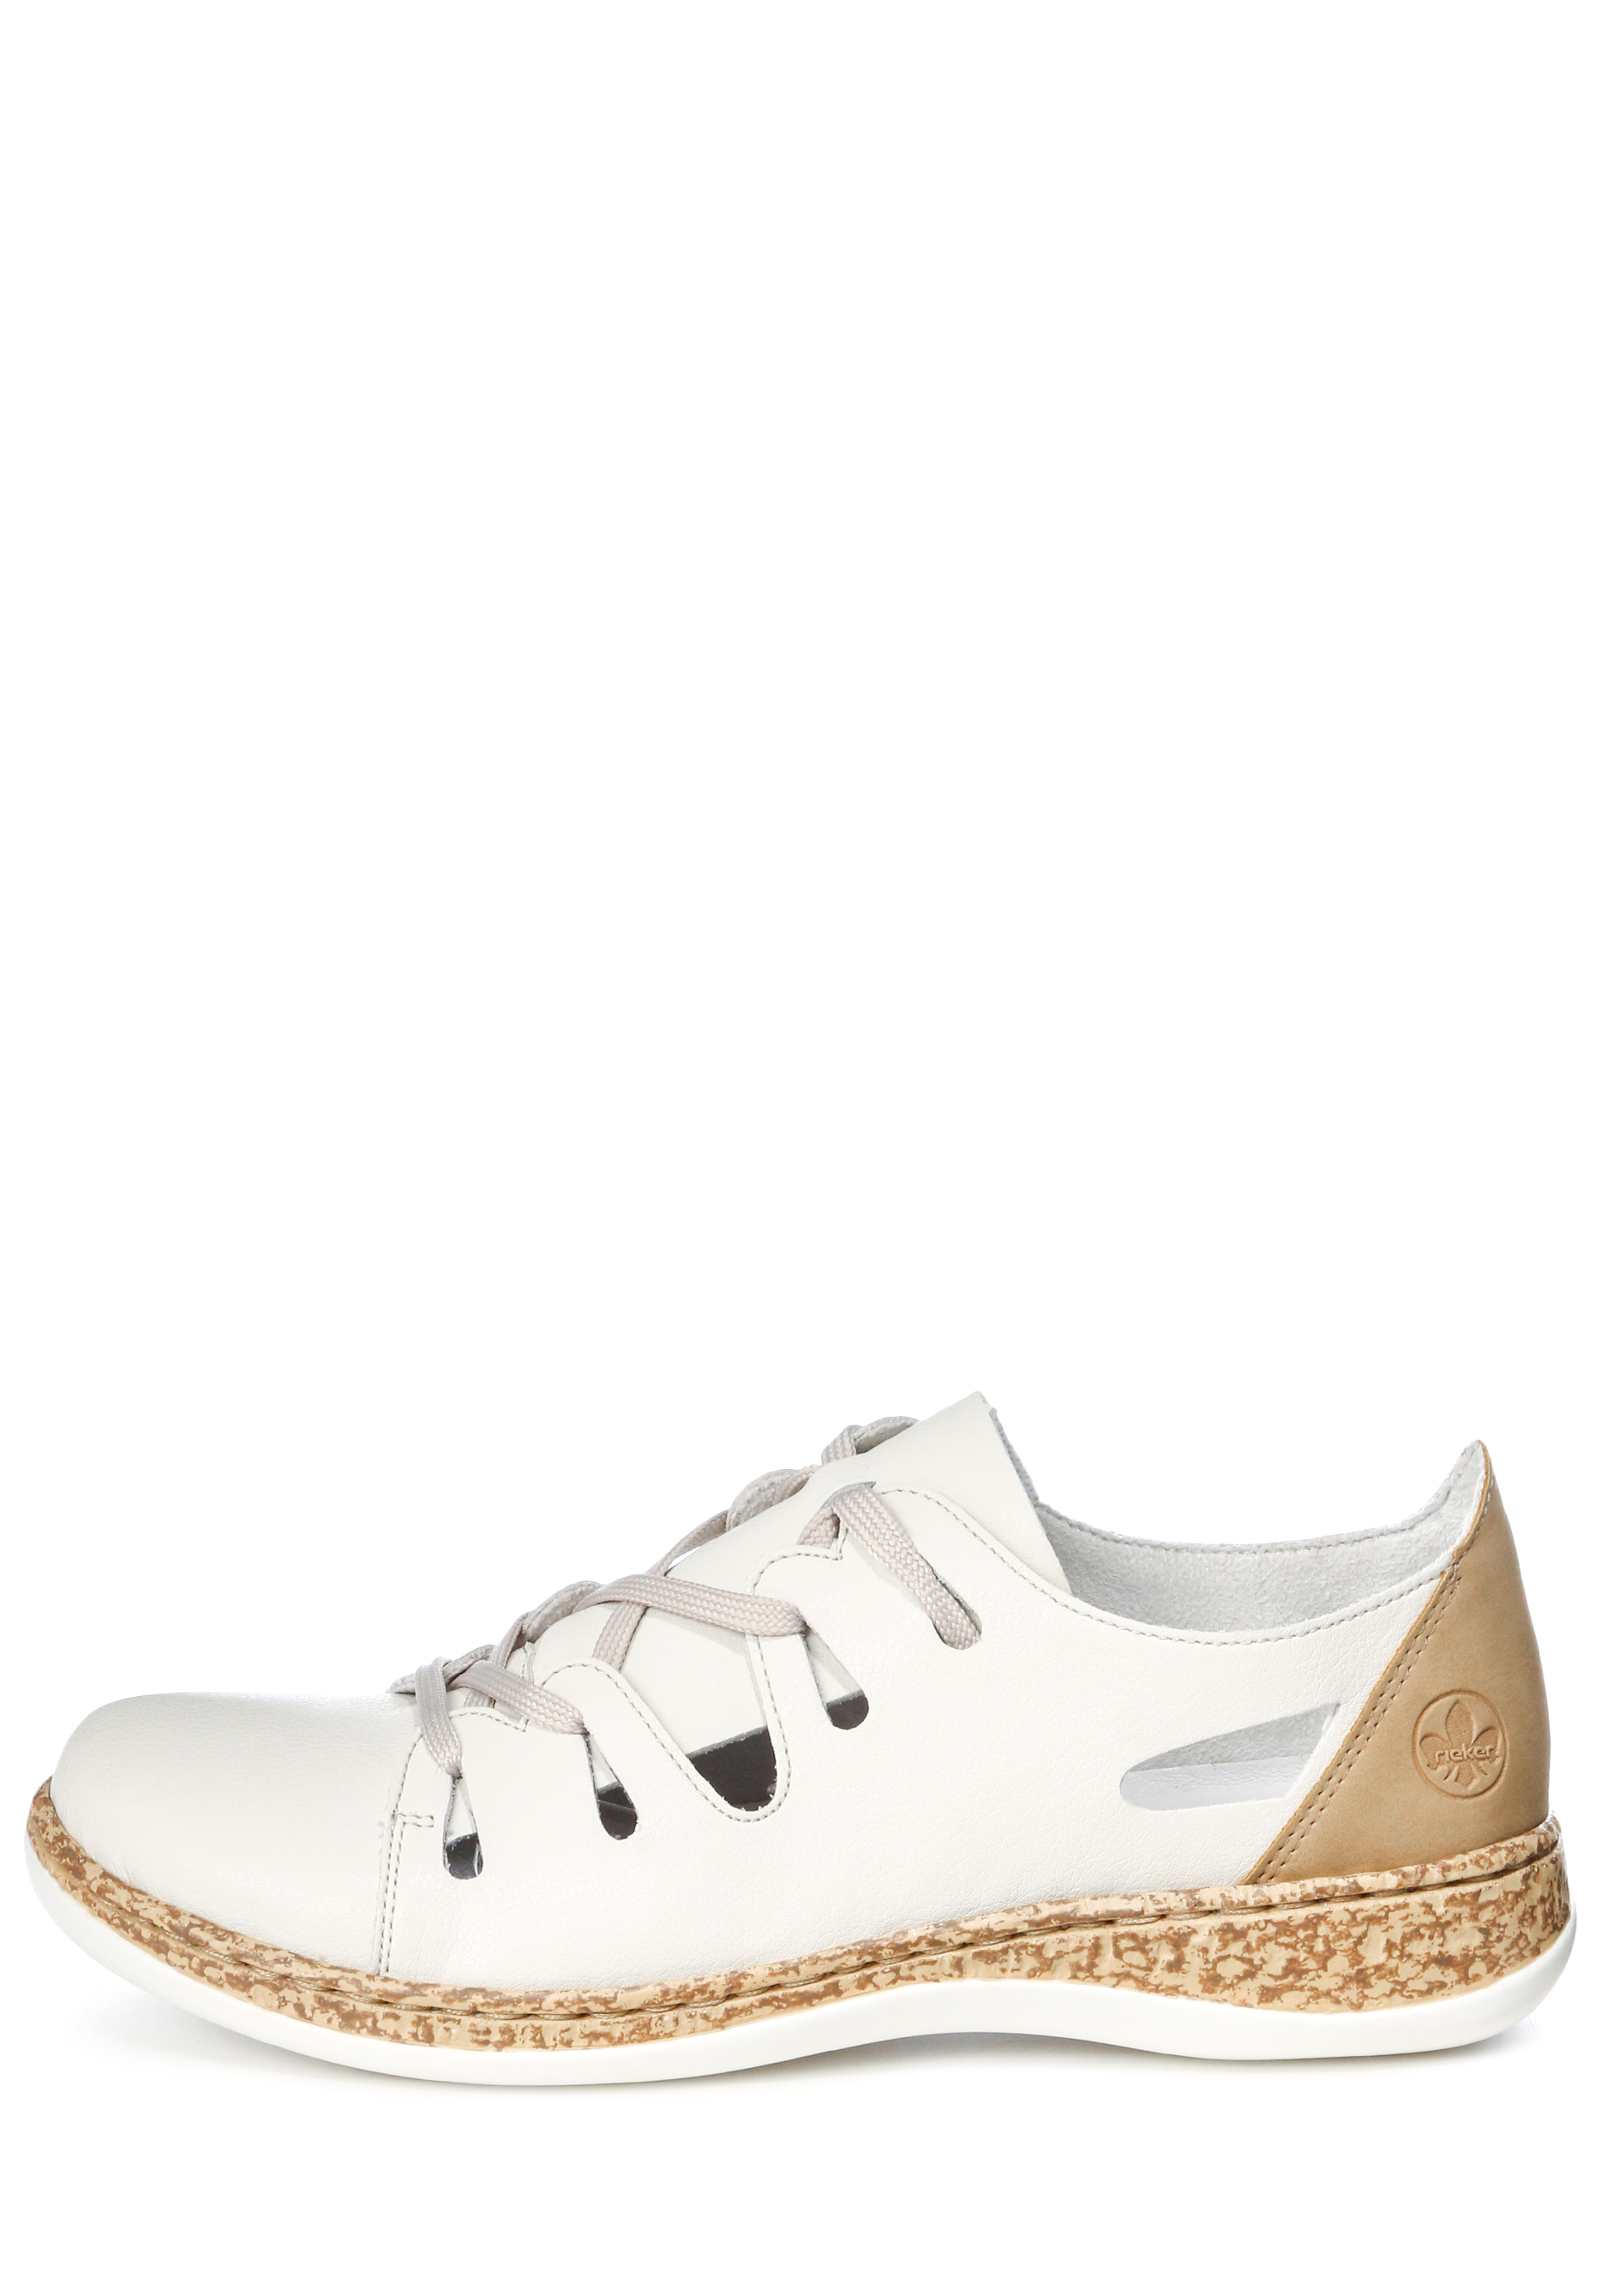 Туфли летние женские "Зои" Remonte, цвет белый, размер 37 - фото 2